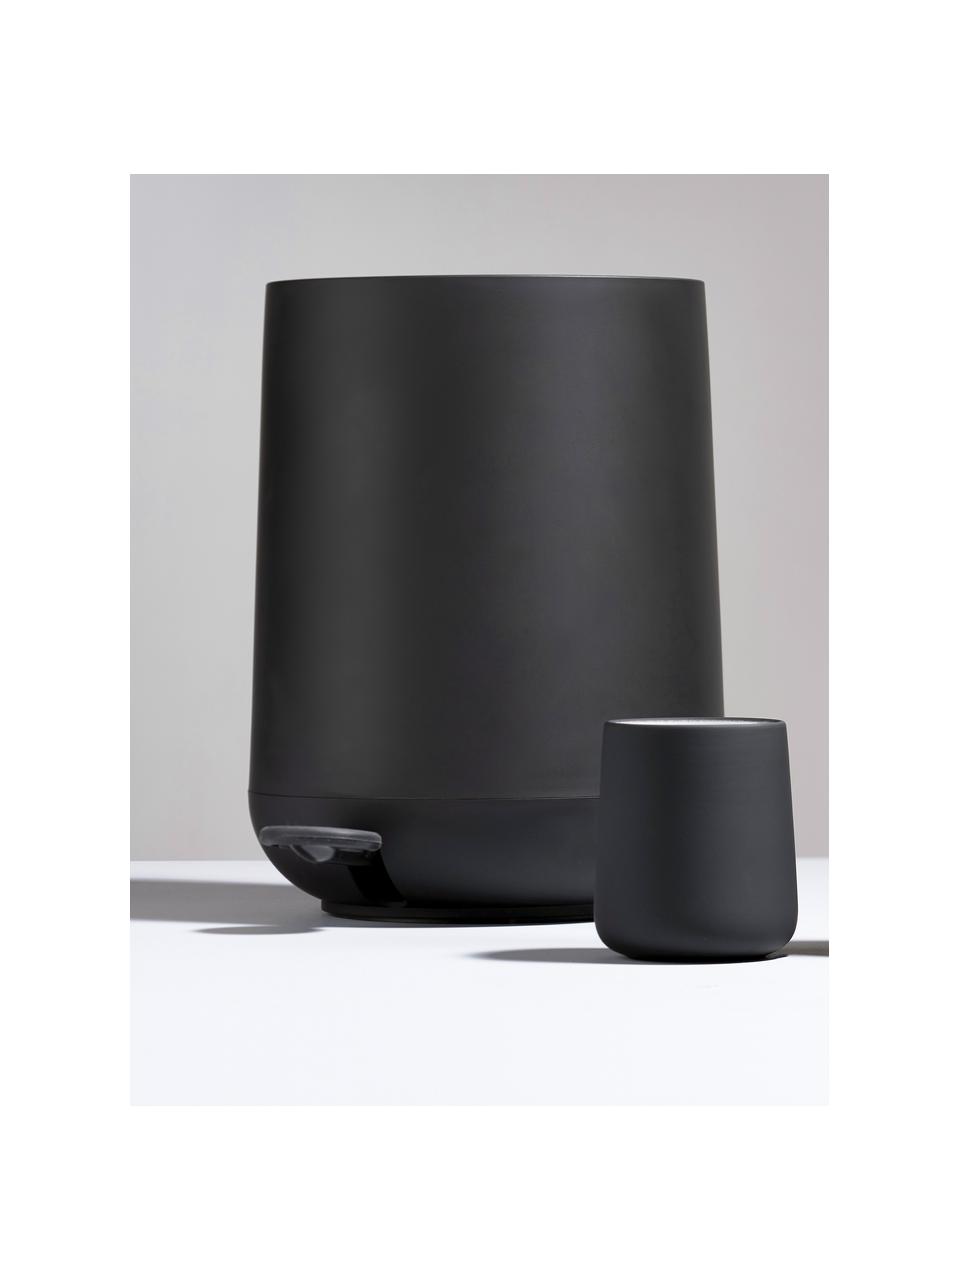 Afvalemmer Nova met softmotion deksel in zwart, ABS-kunststof, Zwart, 5 L